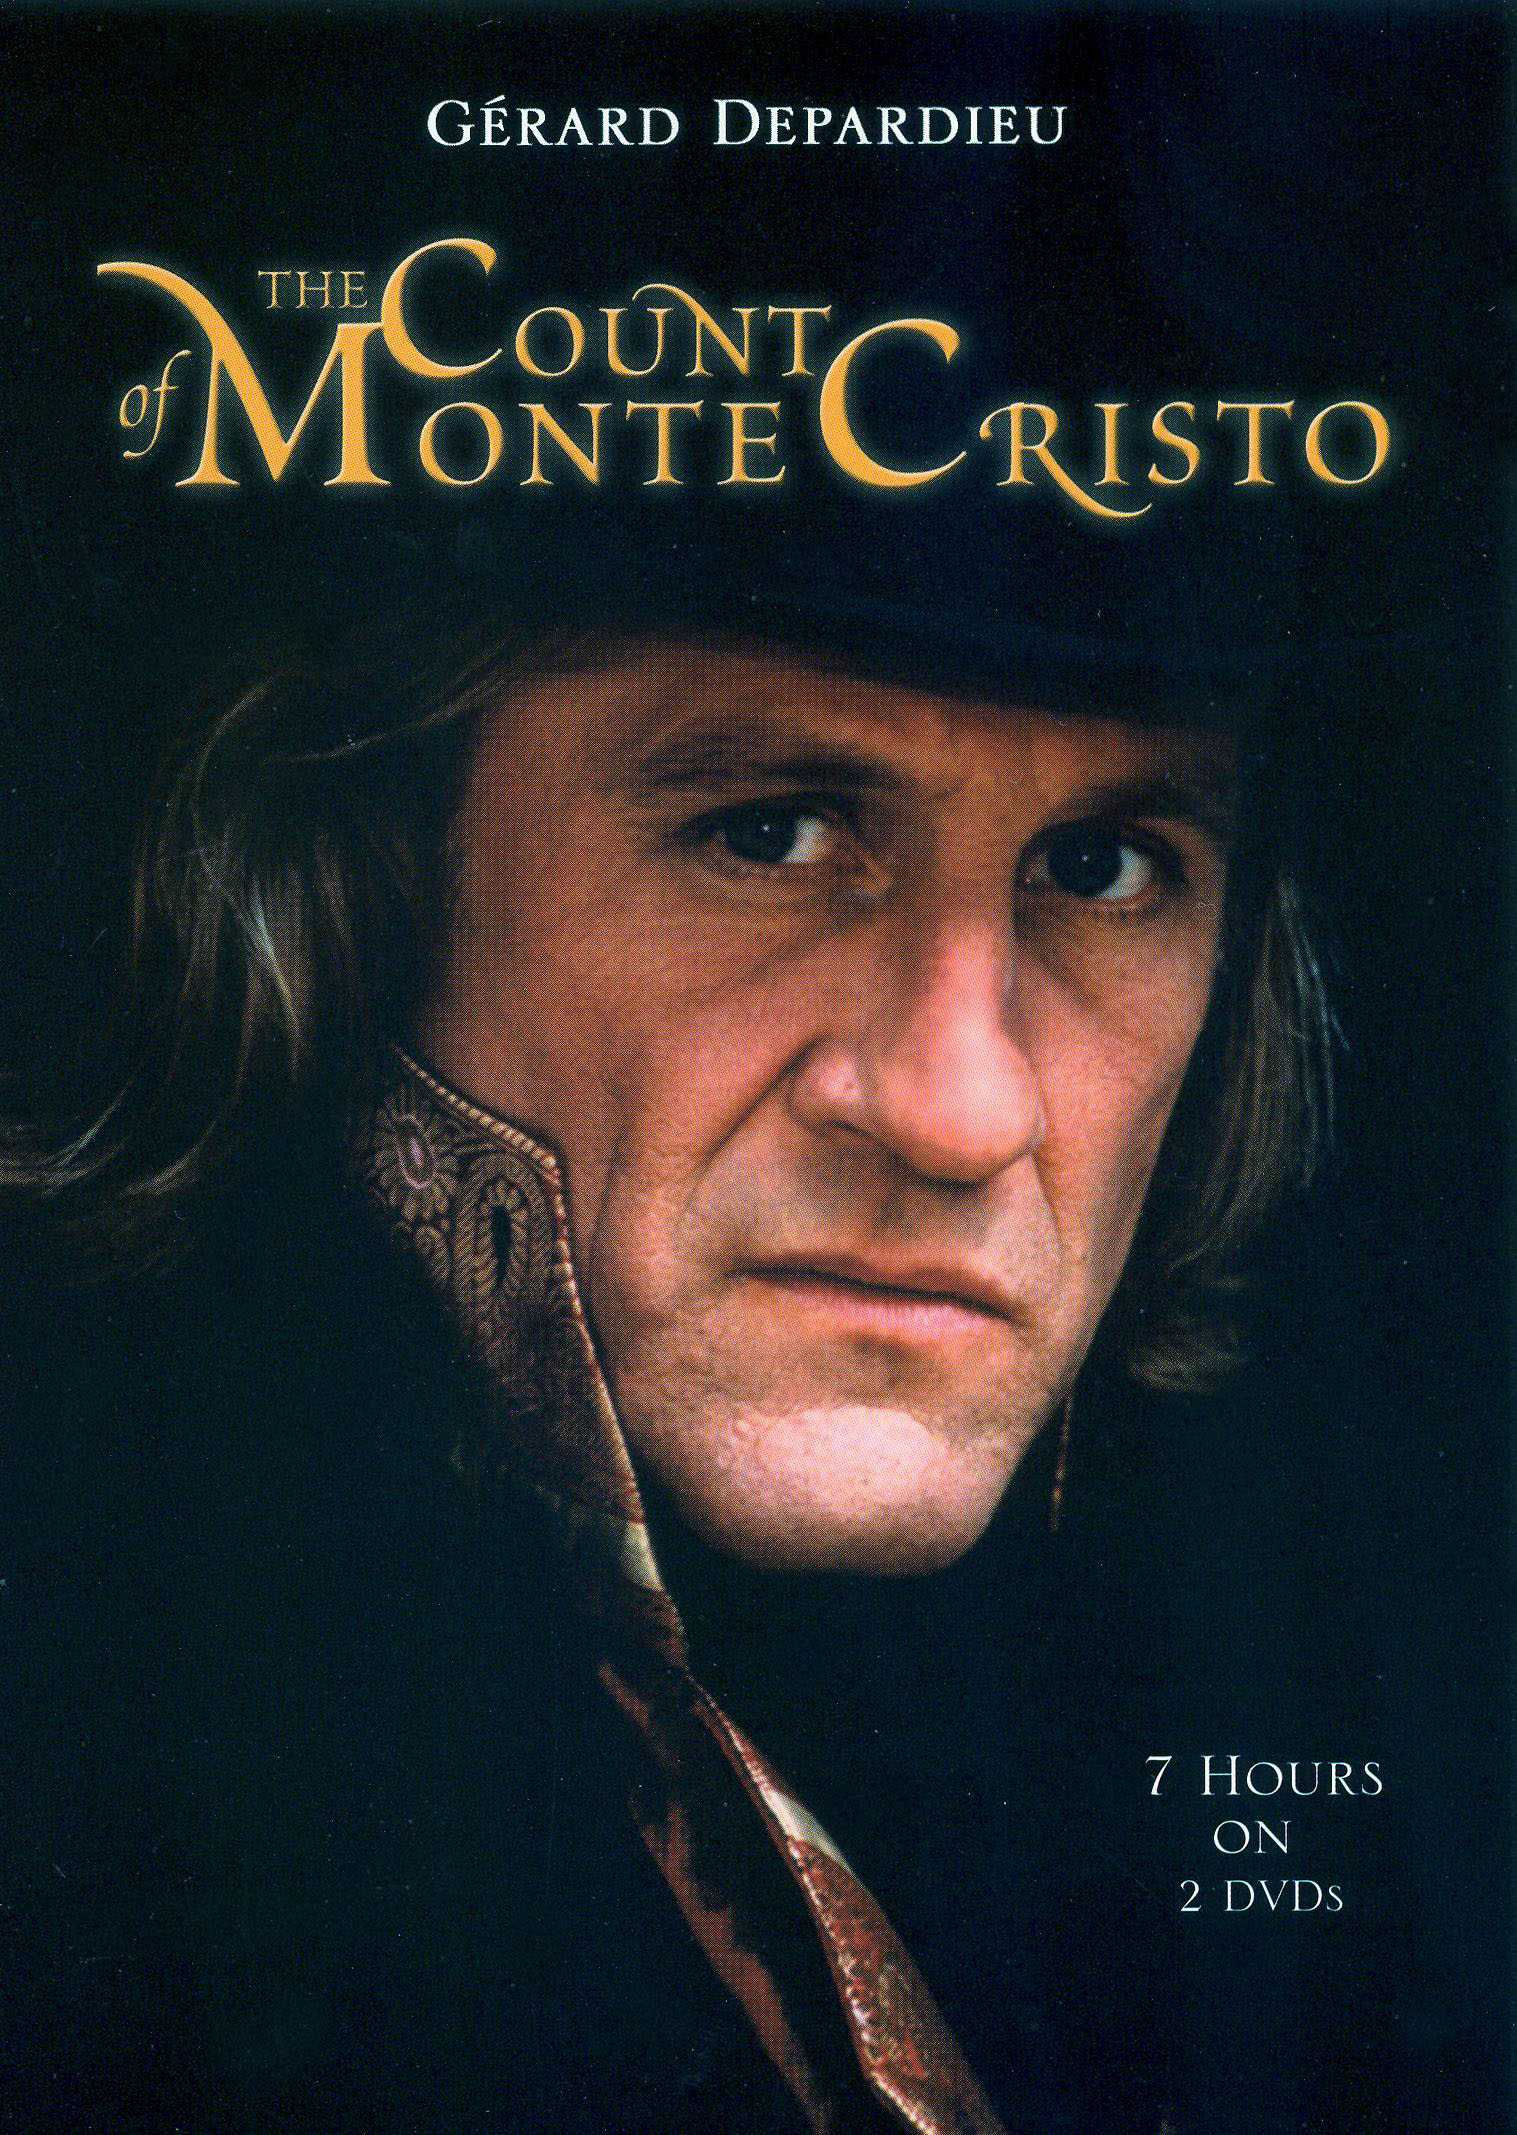 the count of monte cristo cast